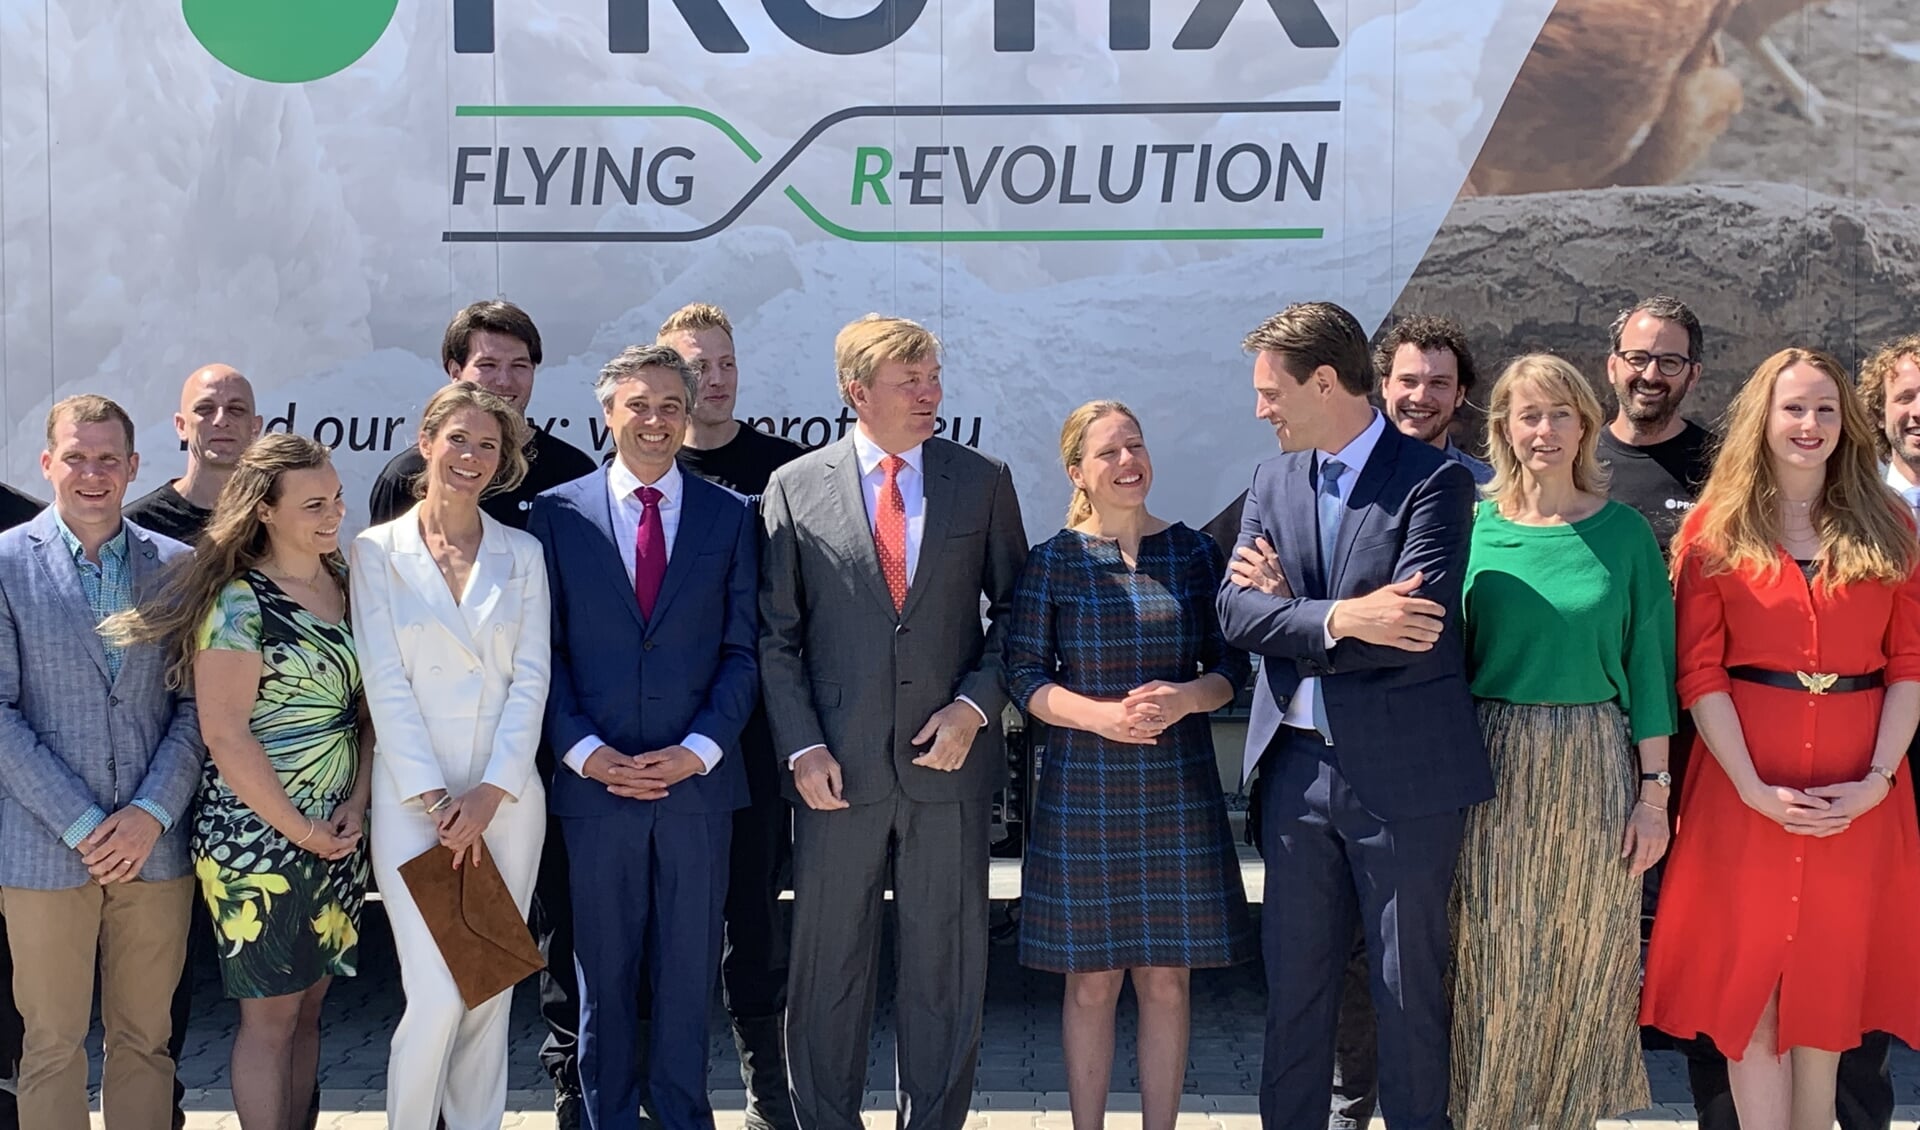 Koning Willem-Alexander opende in 2019 de nieuwste fabriek van Protix aan de Van Konijnenburgweg 